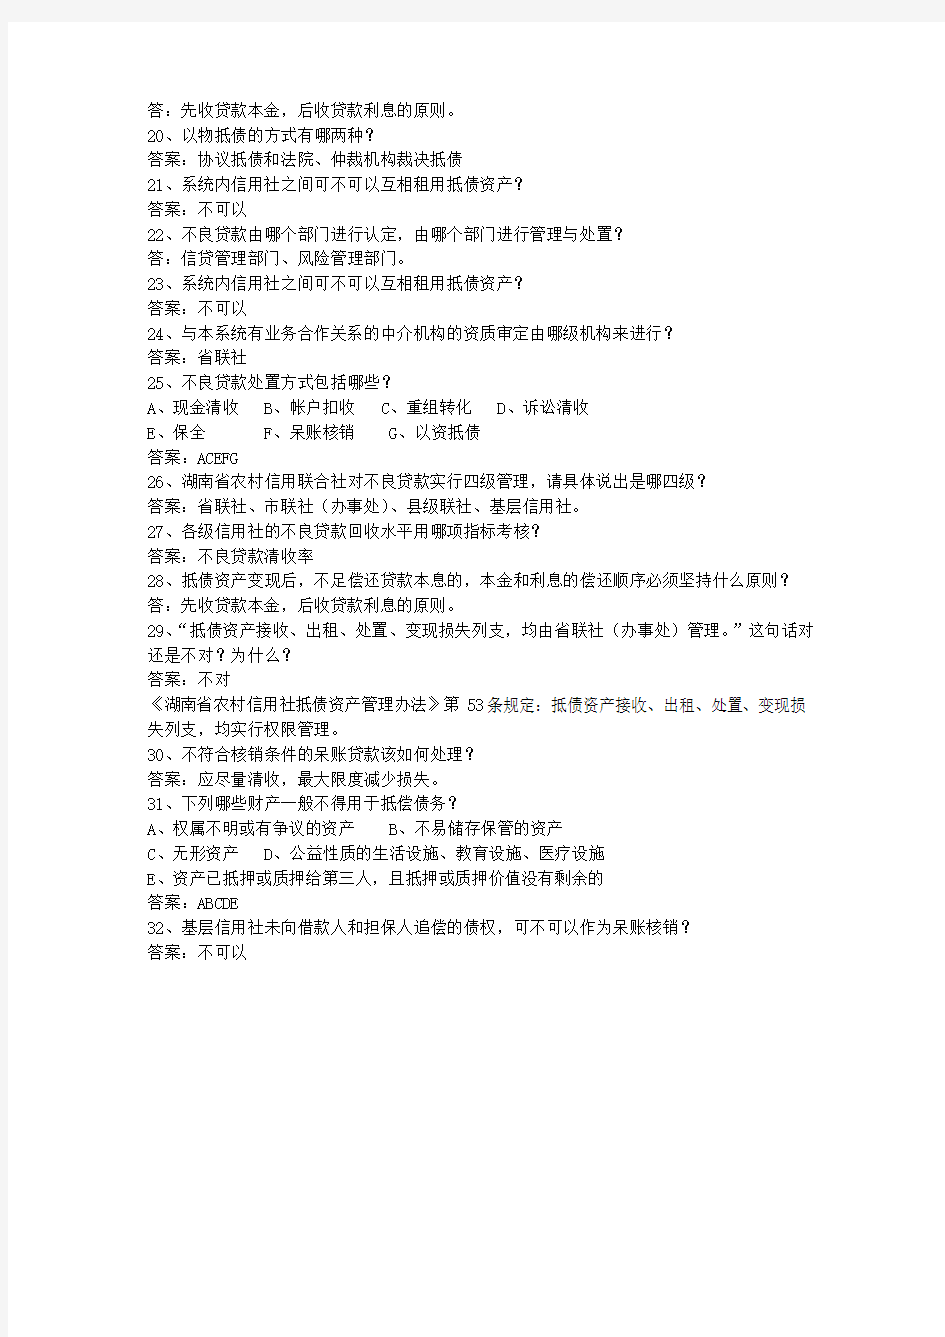 2010广西壮族自治区农村信用社考试历年最新考试试题库(完整版)